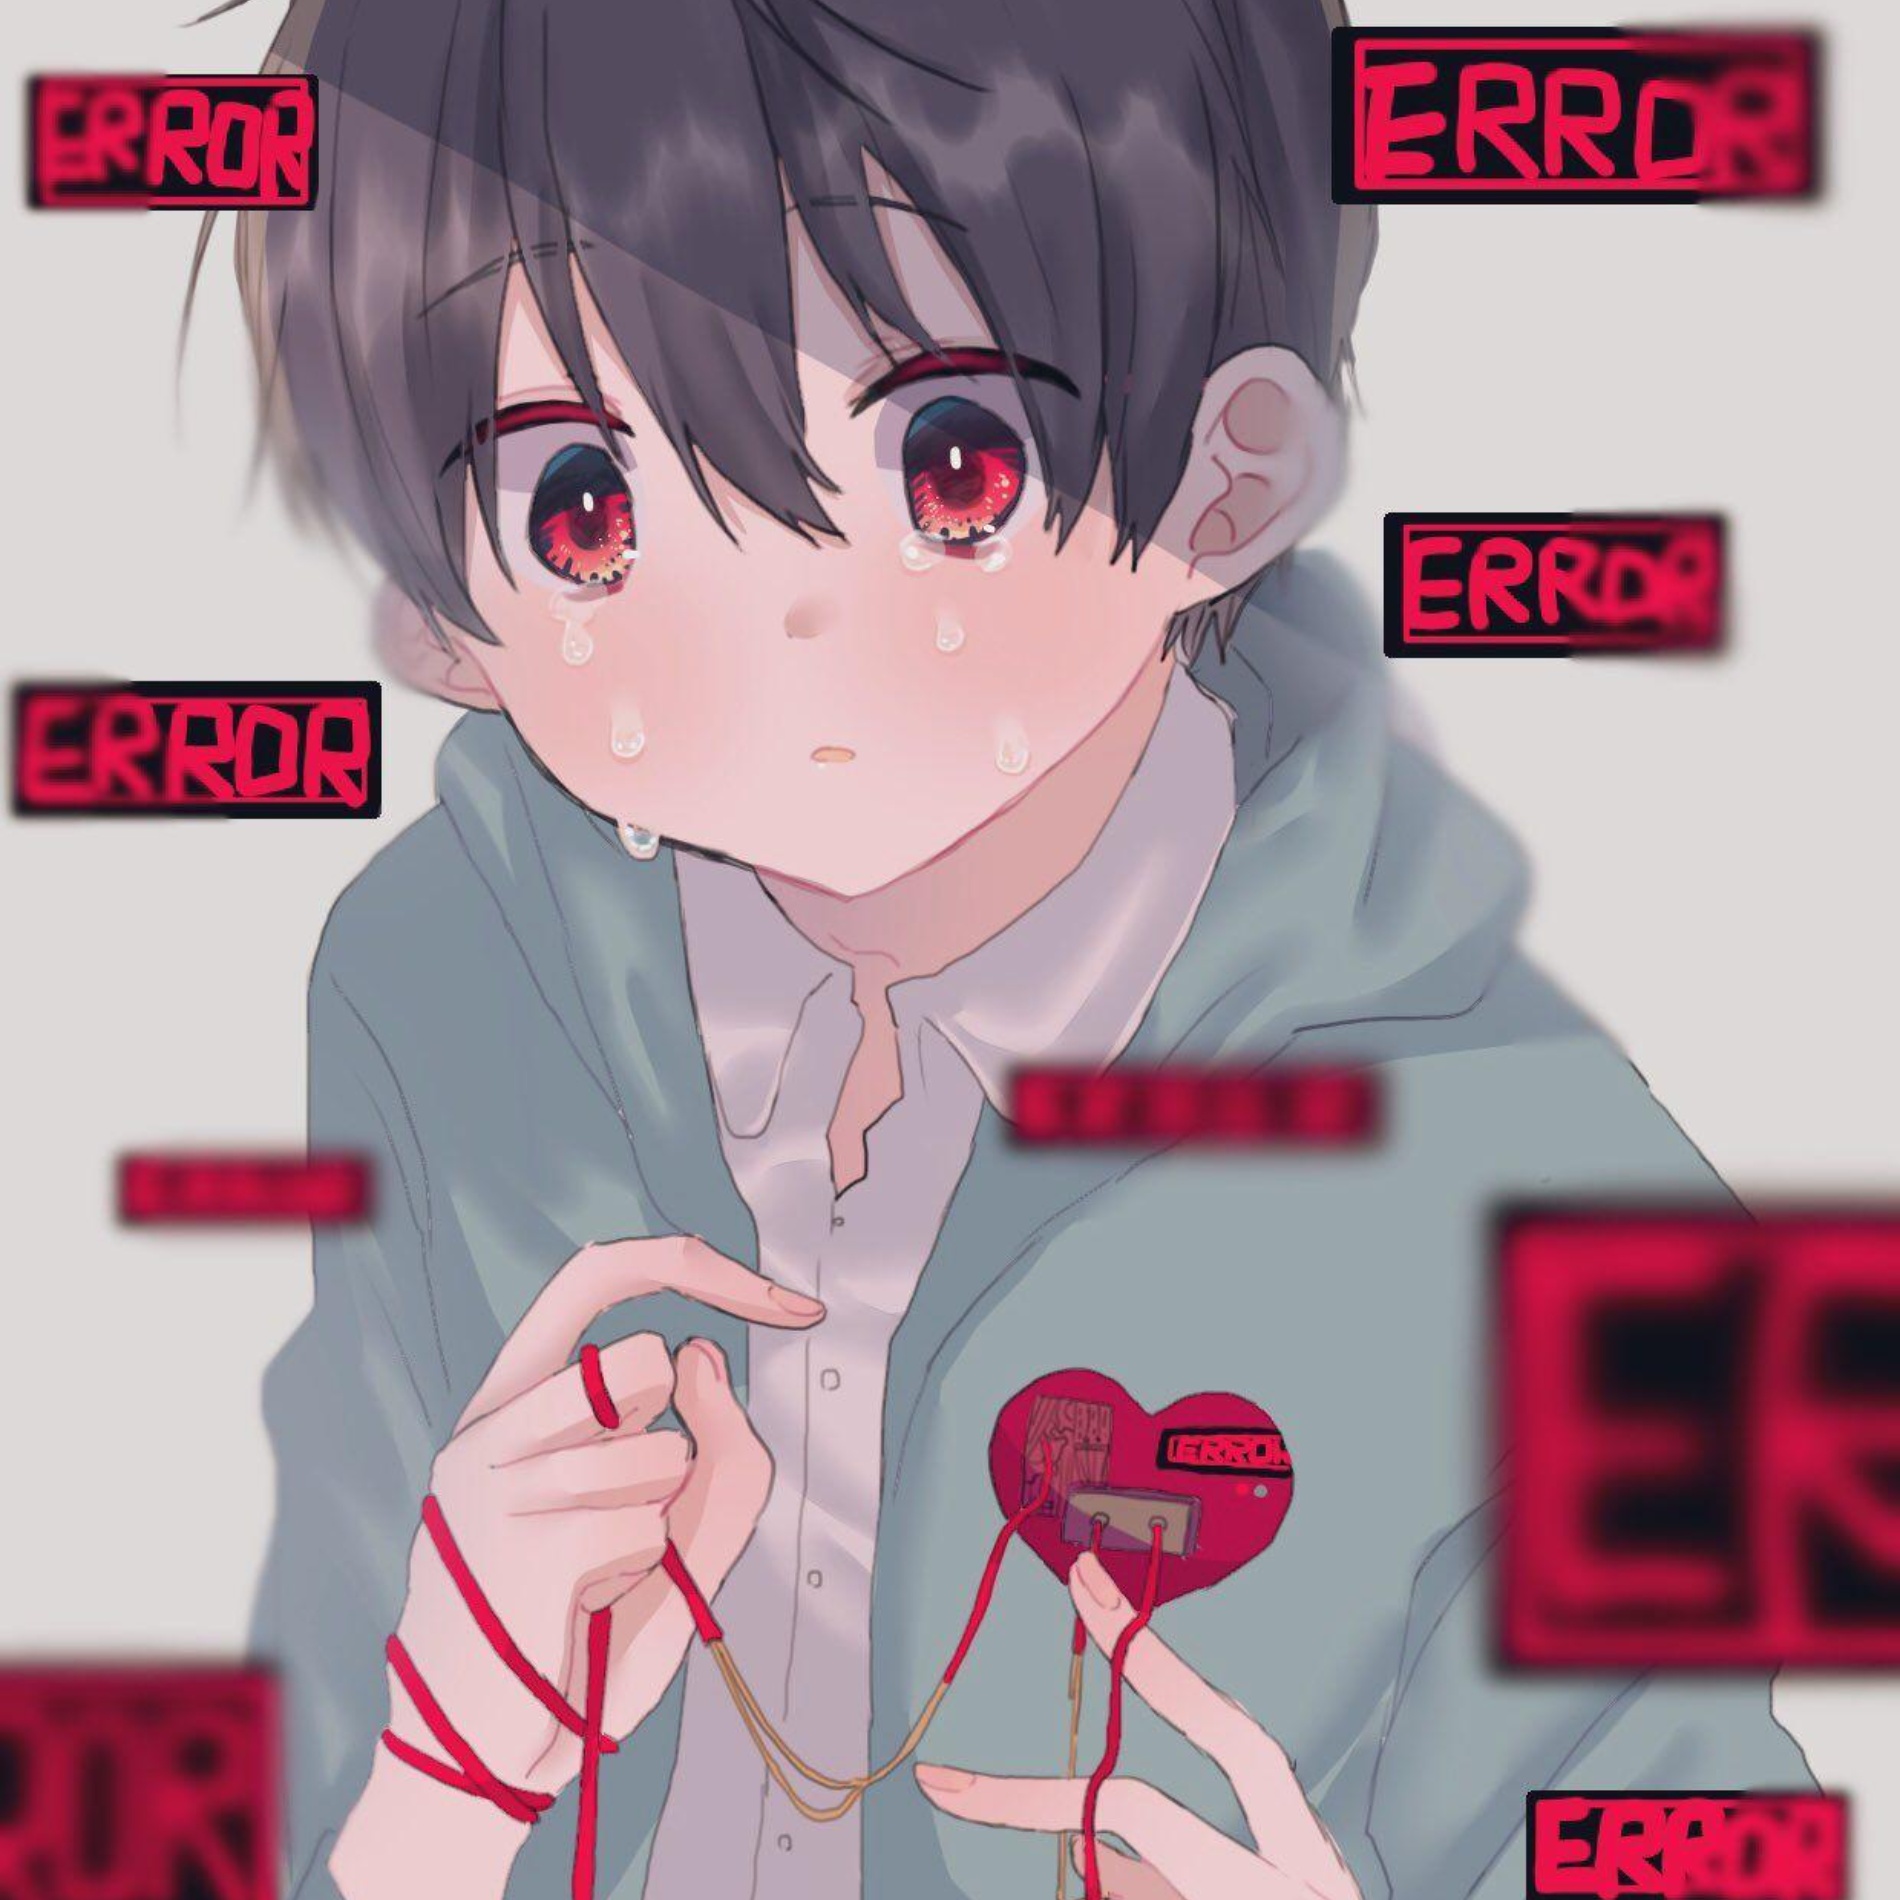 Anime Boy Error Pfp for Facebook